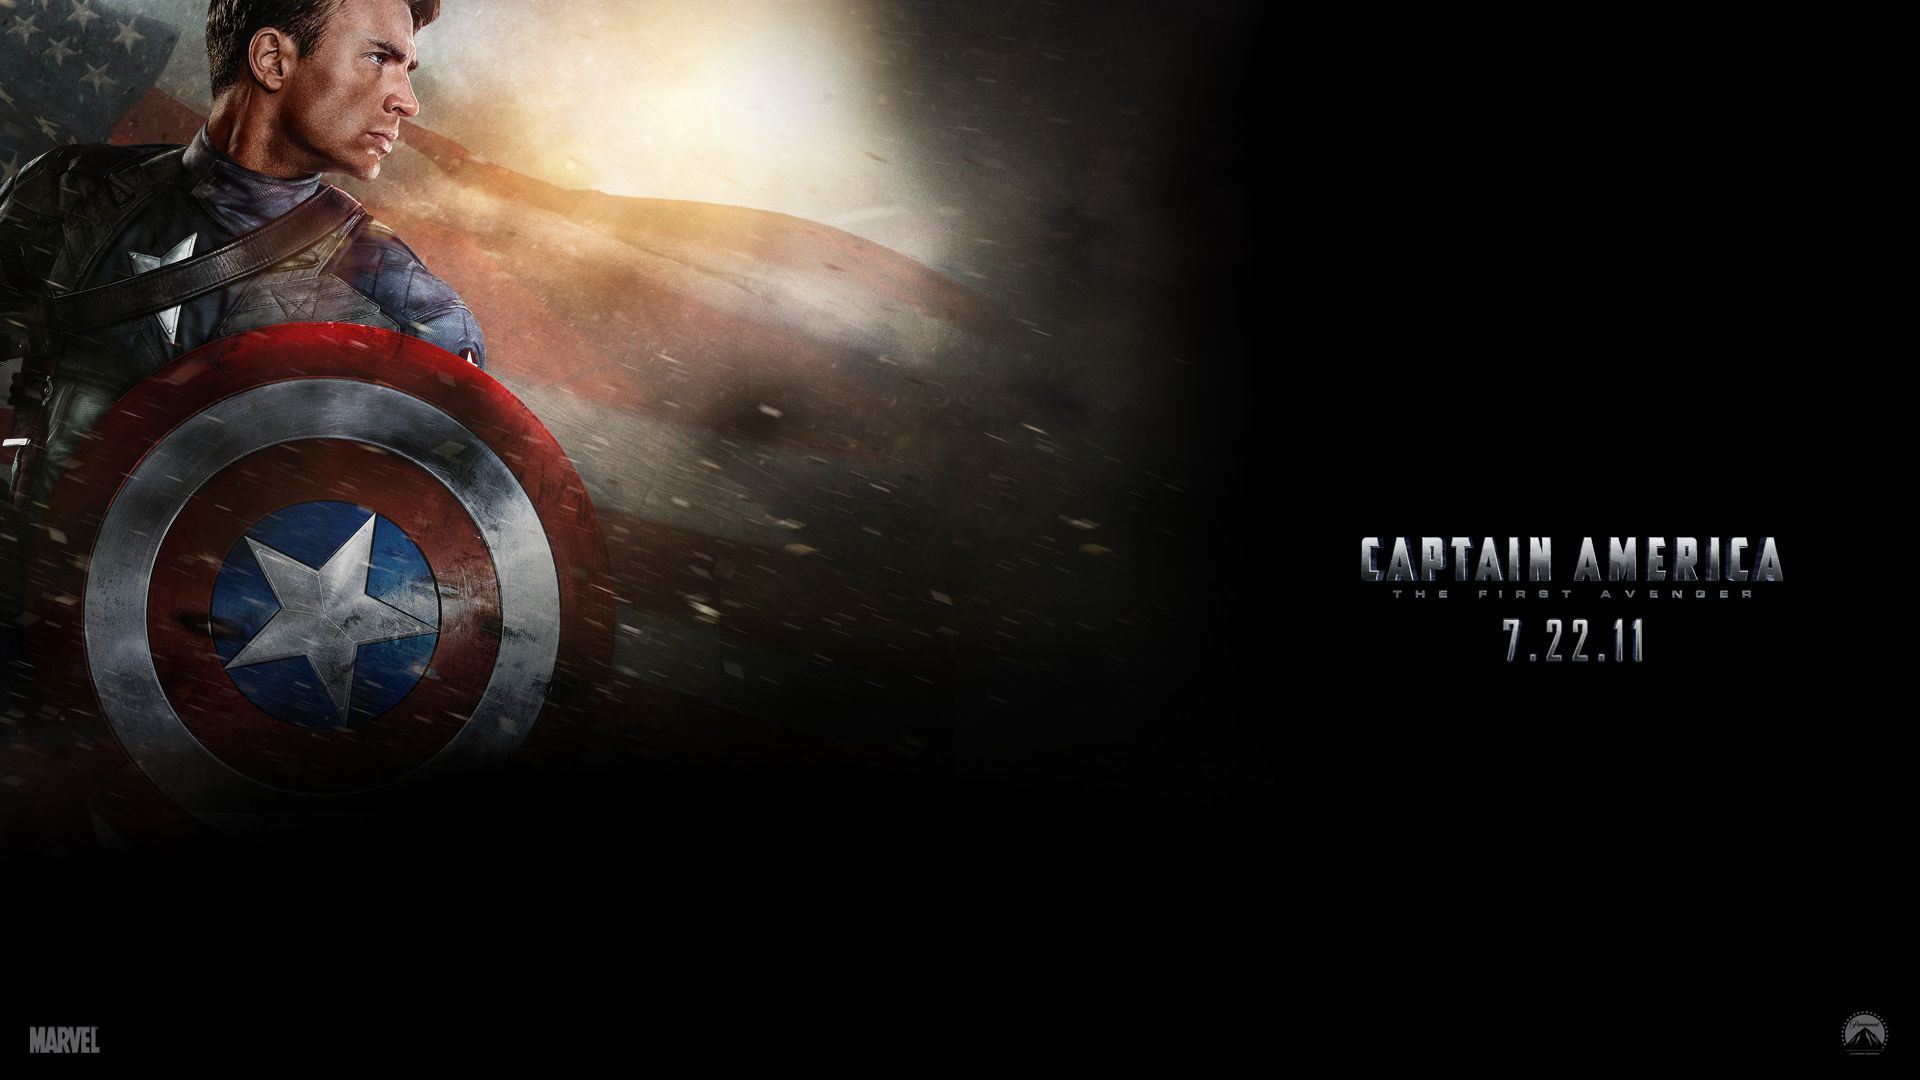 Captain America: The First Avenger Wallpaper. First Snow Wallpaper, First Flight Wallpaper and First Love Wallpaper